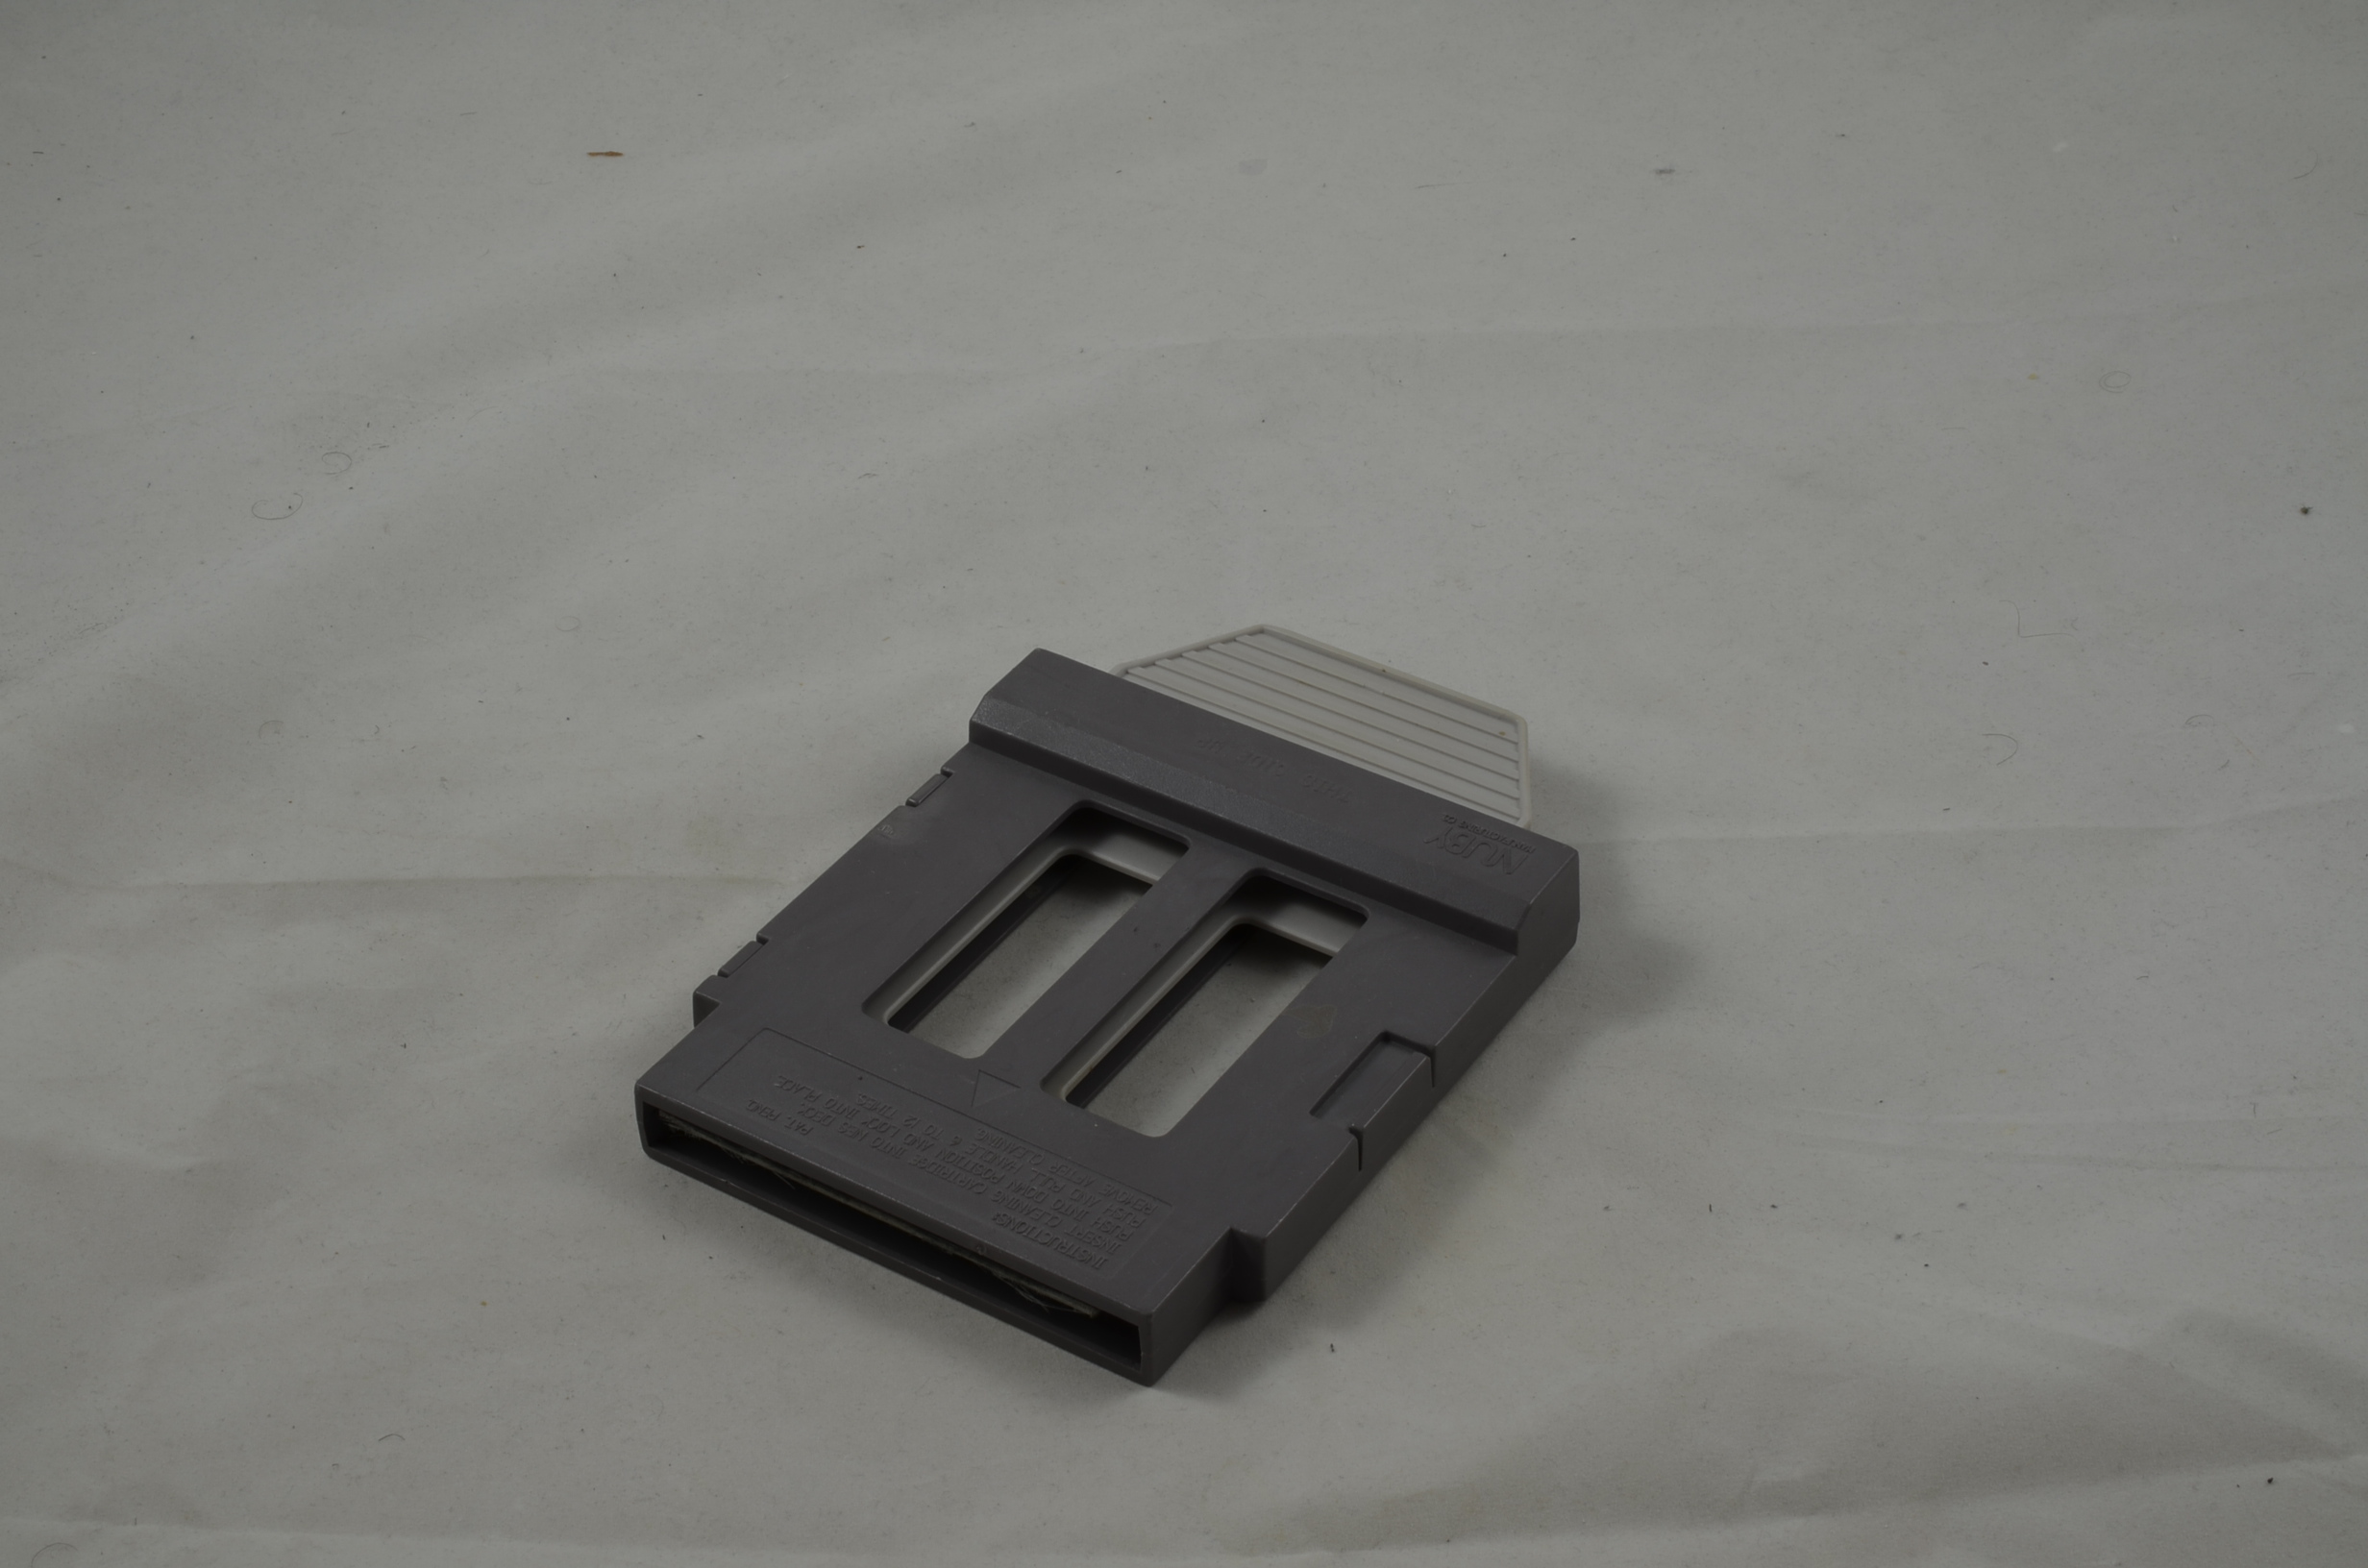 Produktbild von Nuby Cartridge Slot Cleaner für Nintendo NES